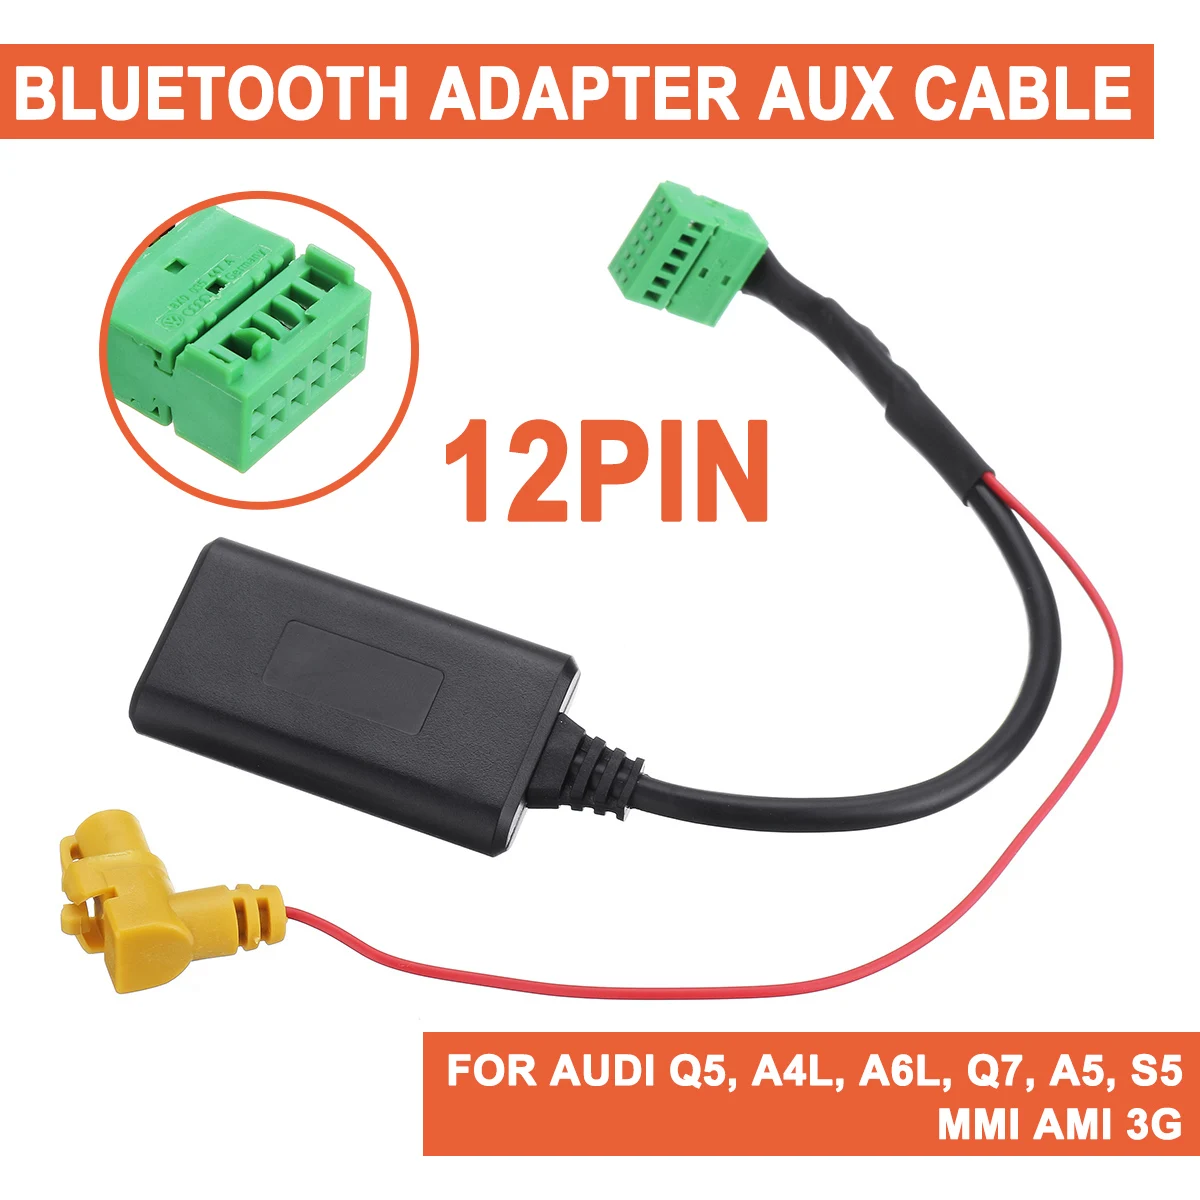 12 Pini Pentru Audi Q5 A4L A6L Q7 A5 S5 Masina Wireless MMI AMI 3G bluetooth AUX Cablu Adaptor Auto AUX-IN Radio Audio Stereo Intrare